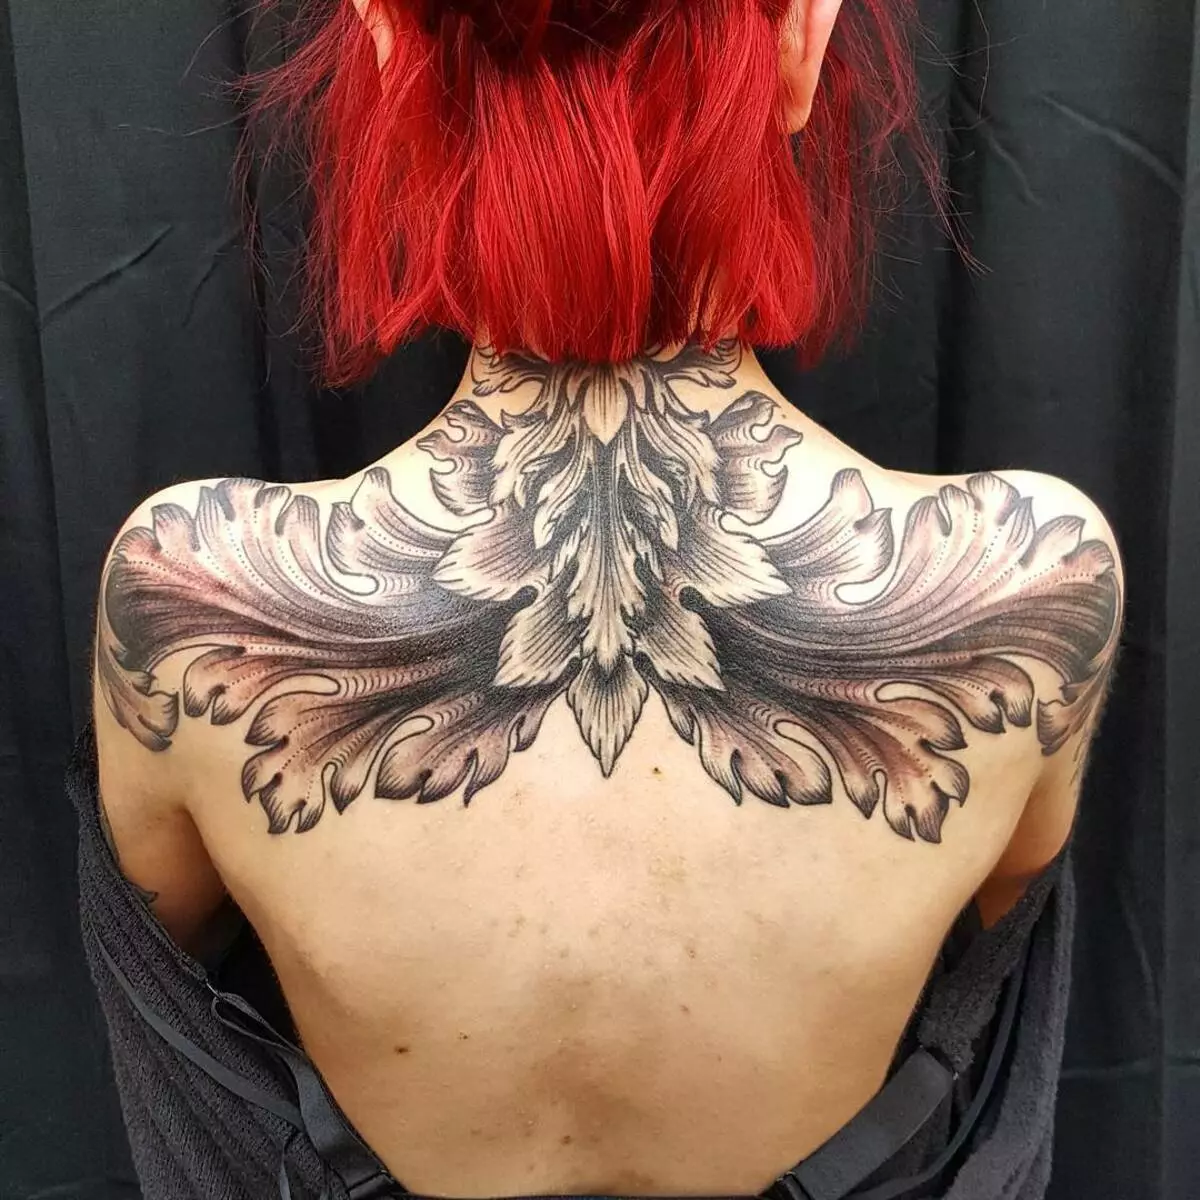 Baroka tatuo: la skizoj de viroj kaj bela tatuo kun ŝablonoj por knabinoj. Tatuaj 